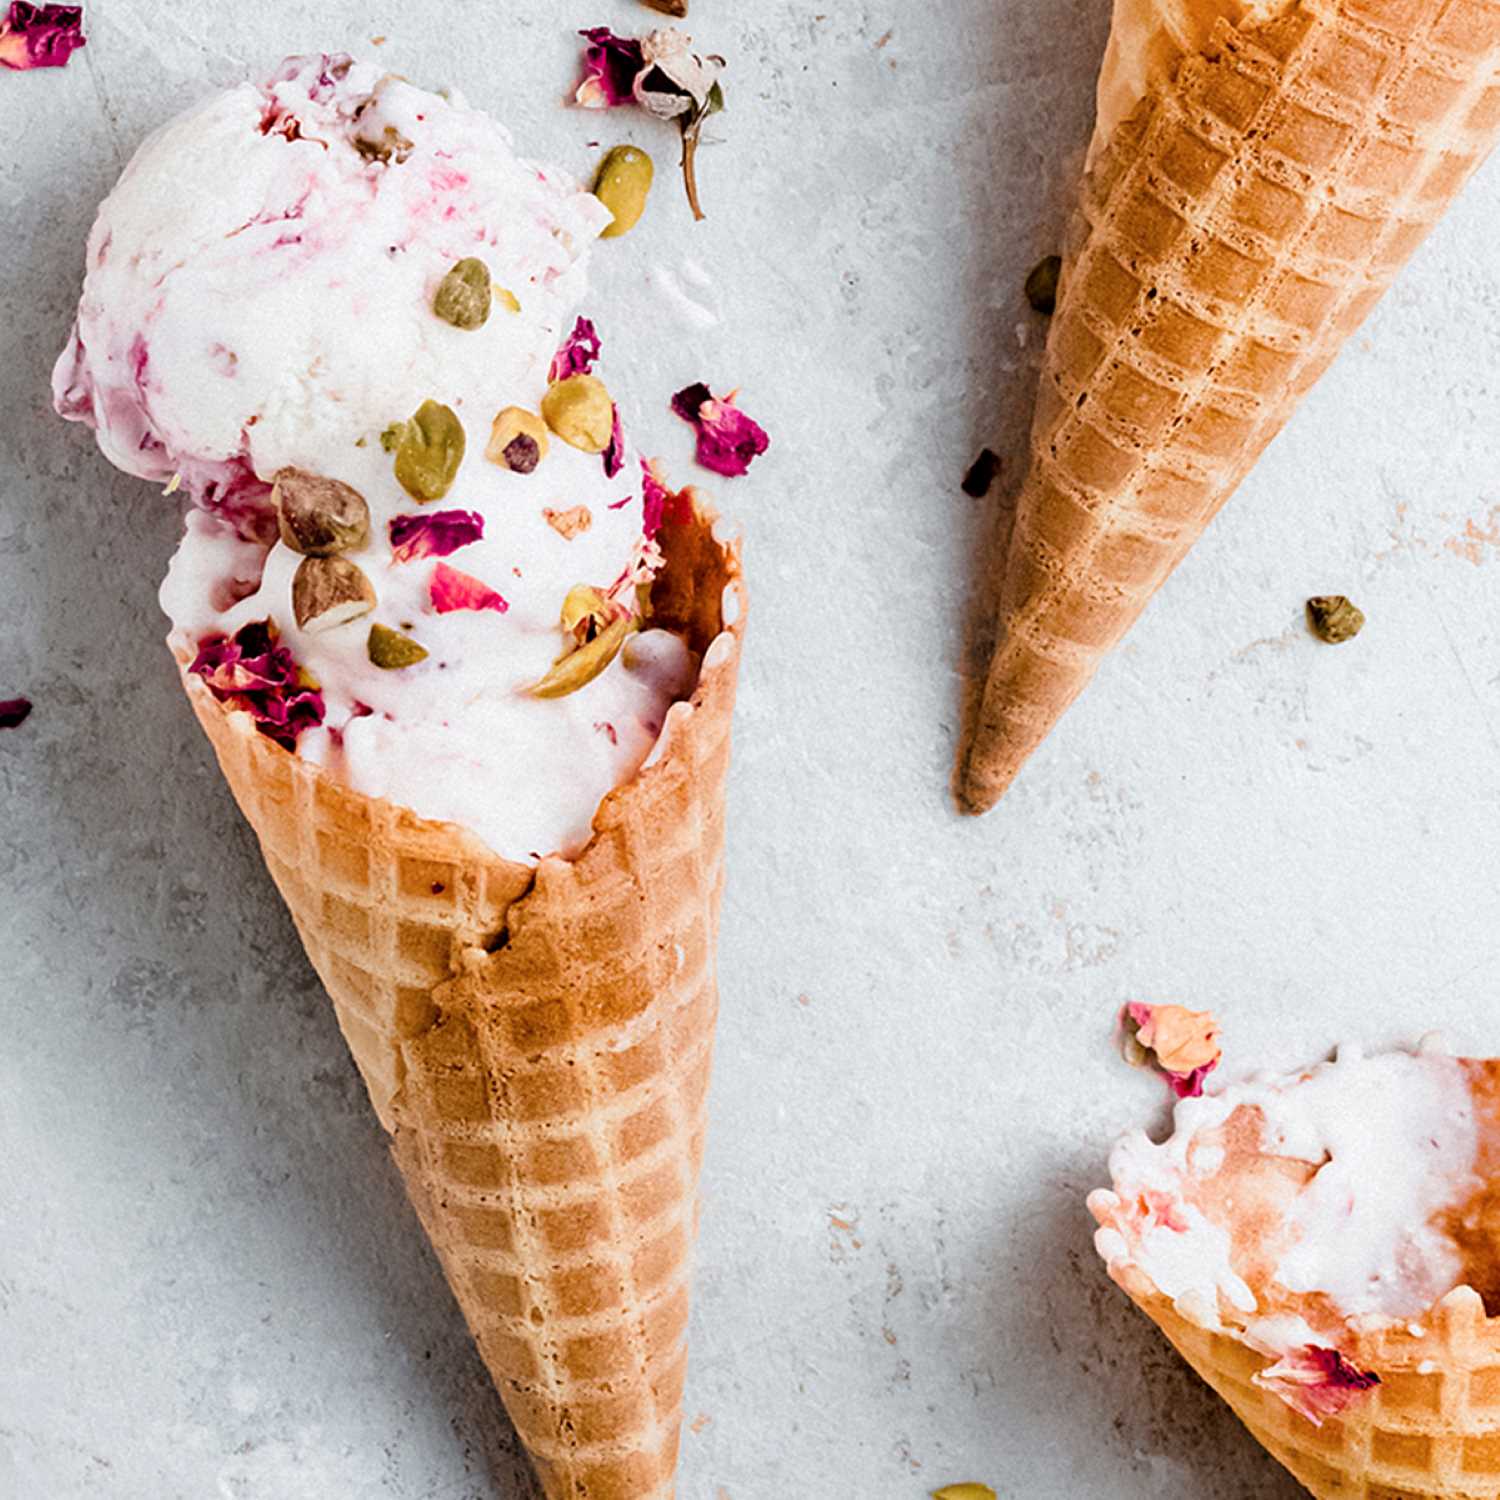 edible flower recipes, rose ice cream recipe